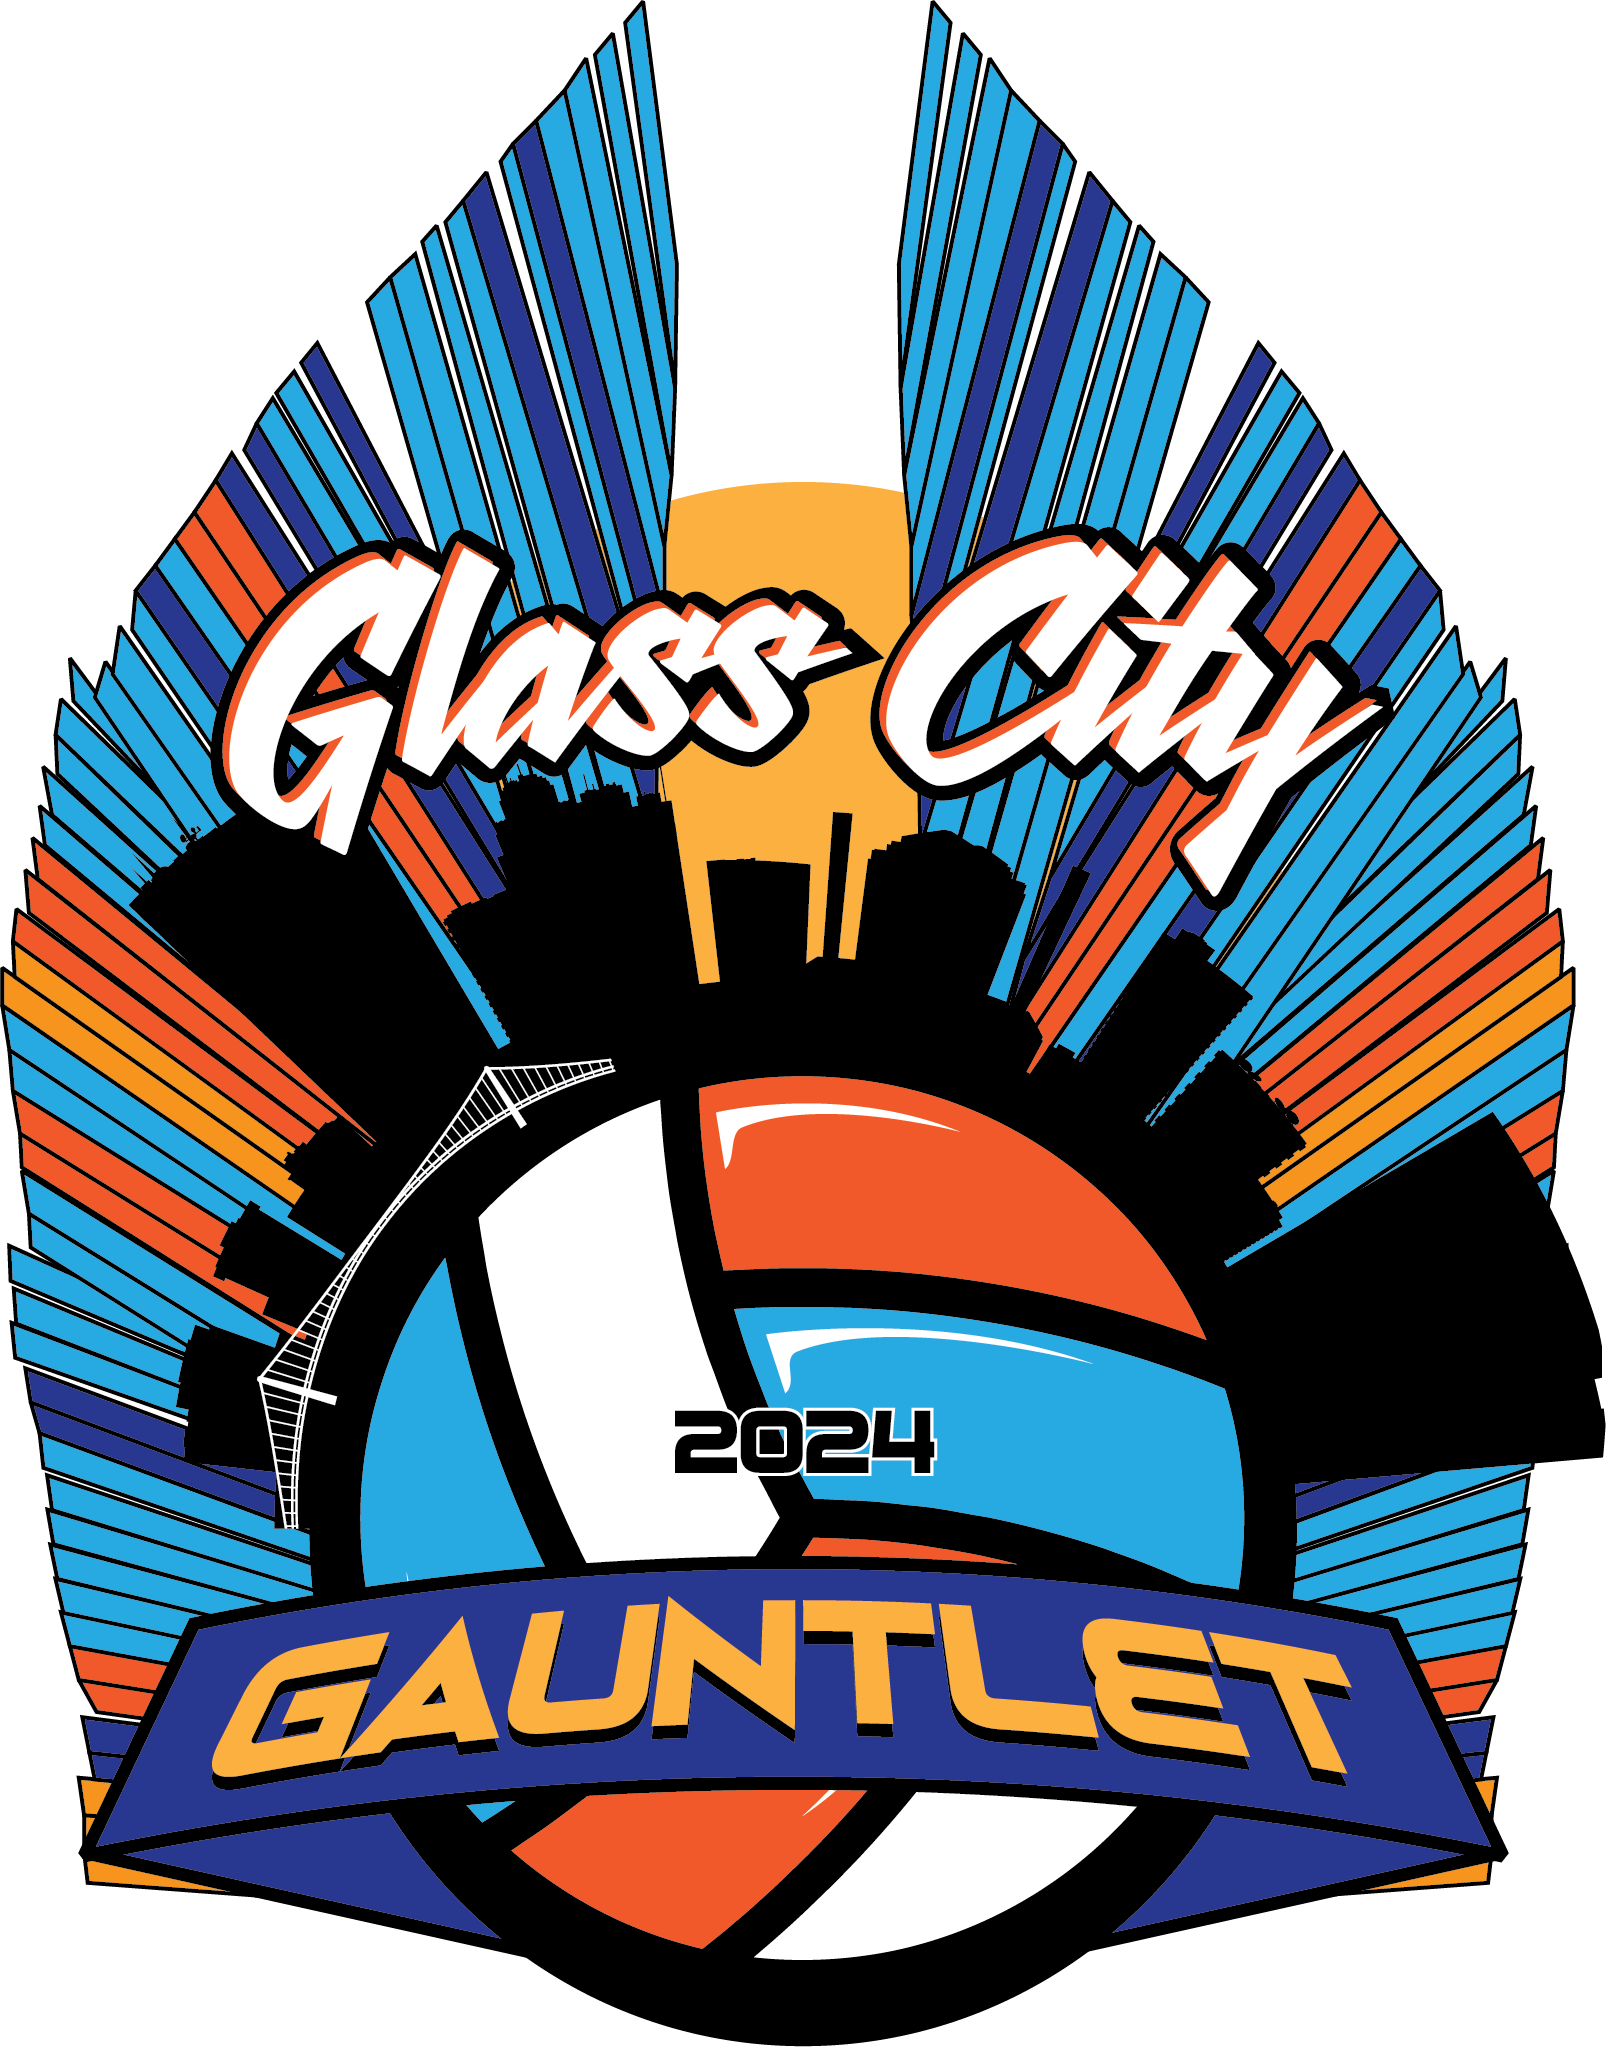 2024 Glass City Gauntlet